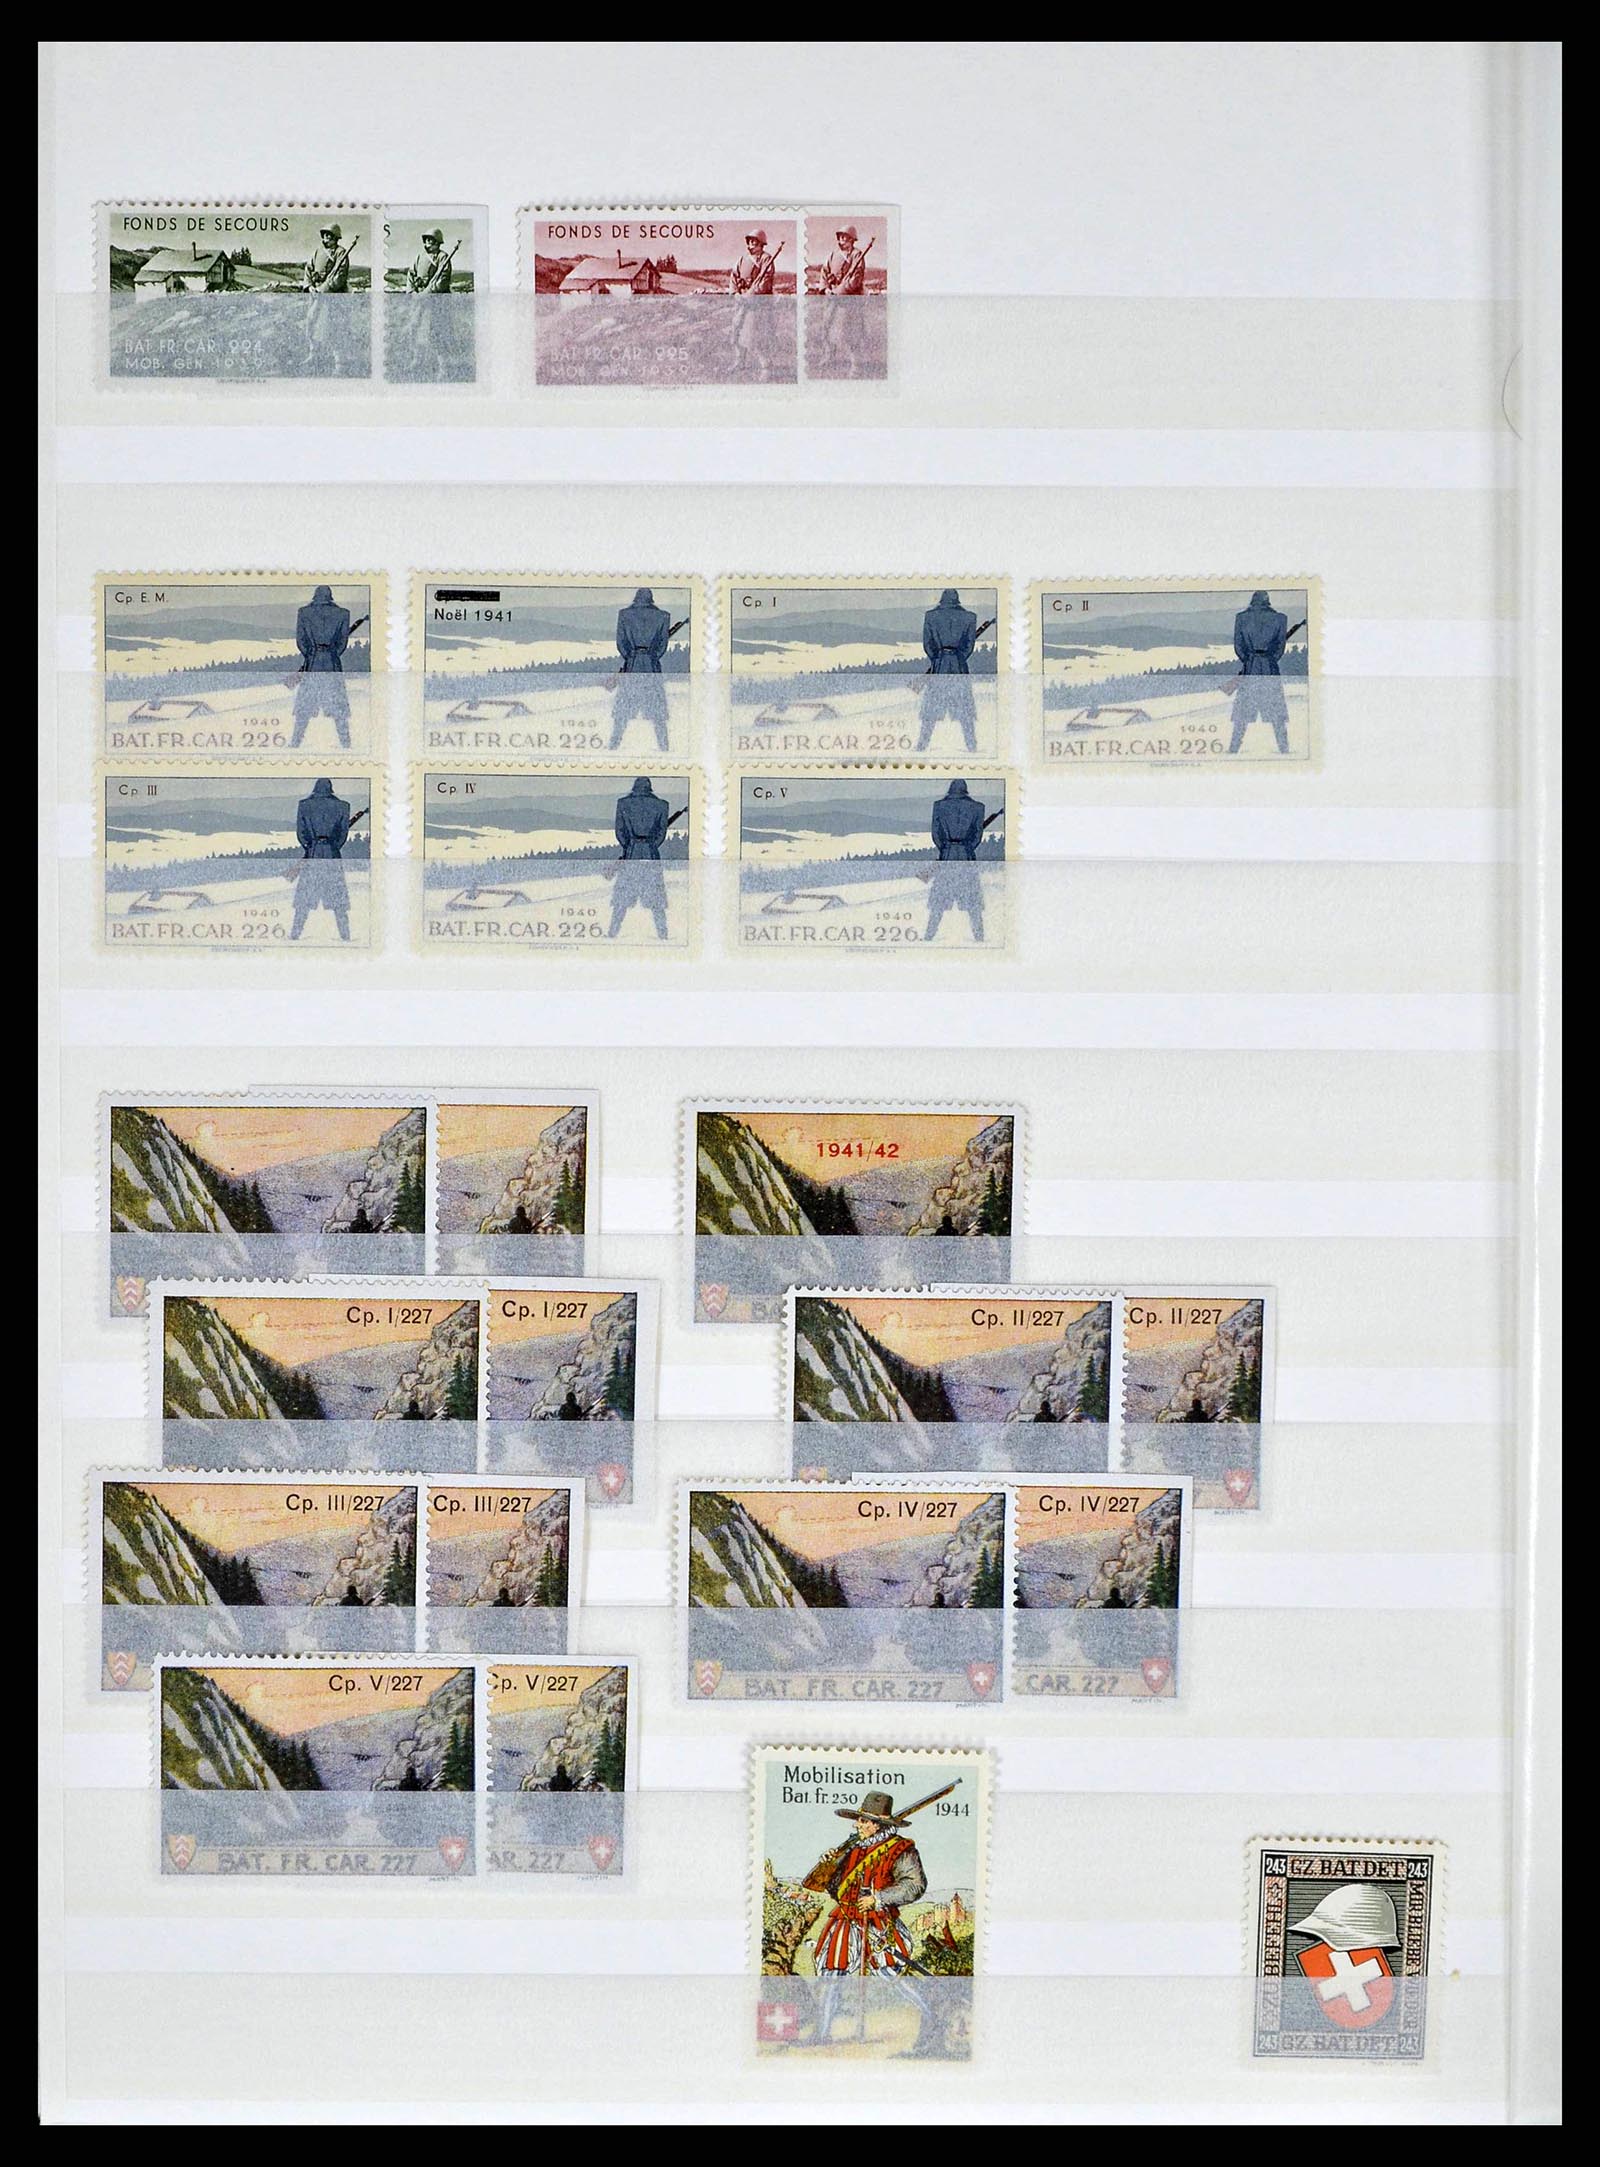 38695 0040 - Stamp collection 38695 Switzerland soldierstamps 1914-1945.